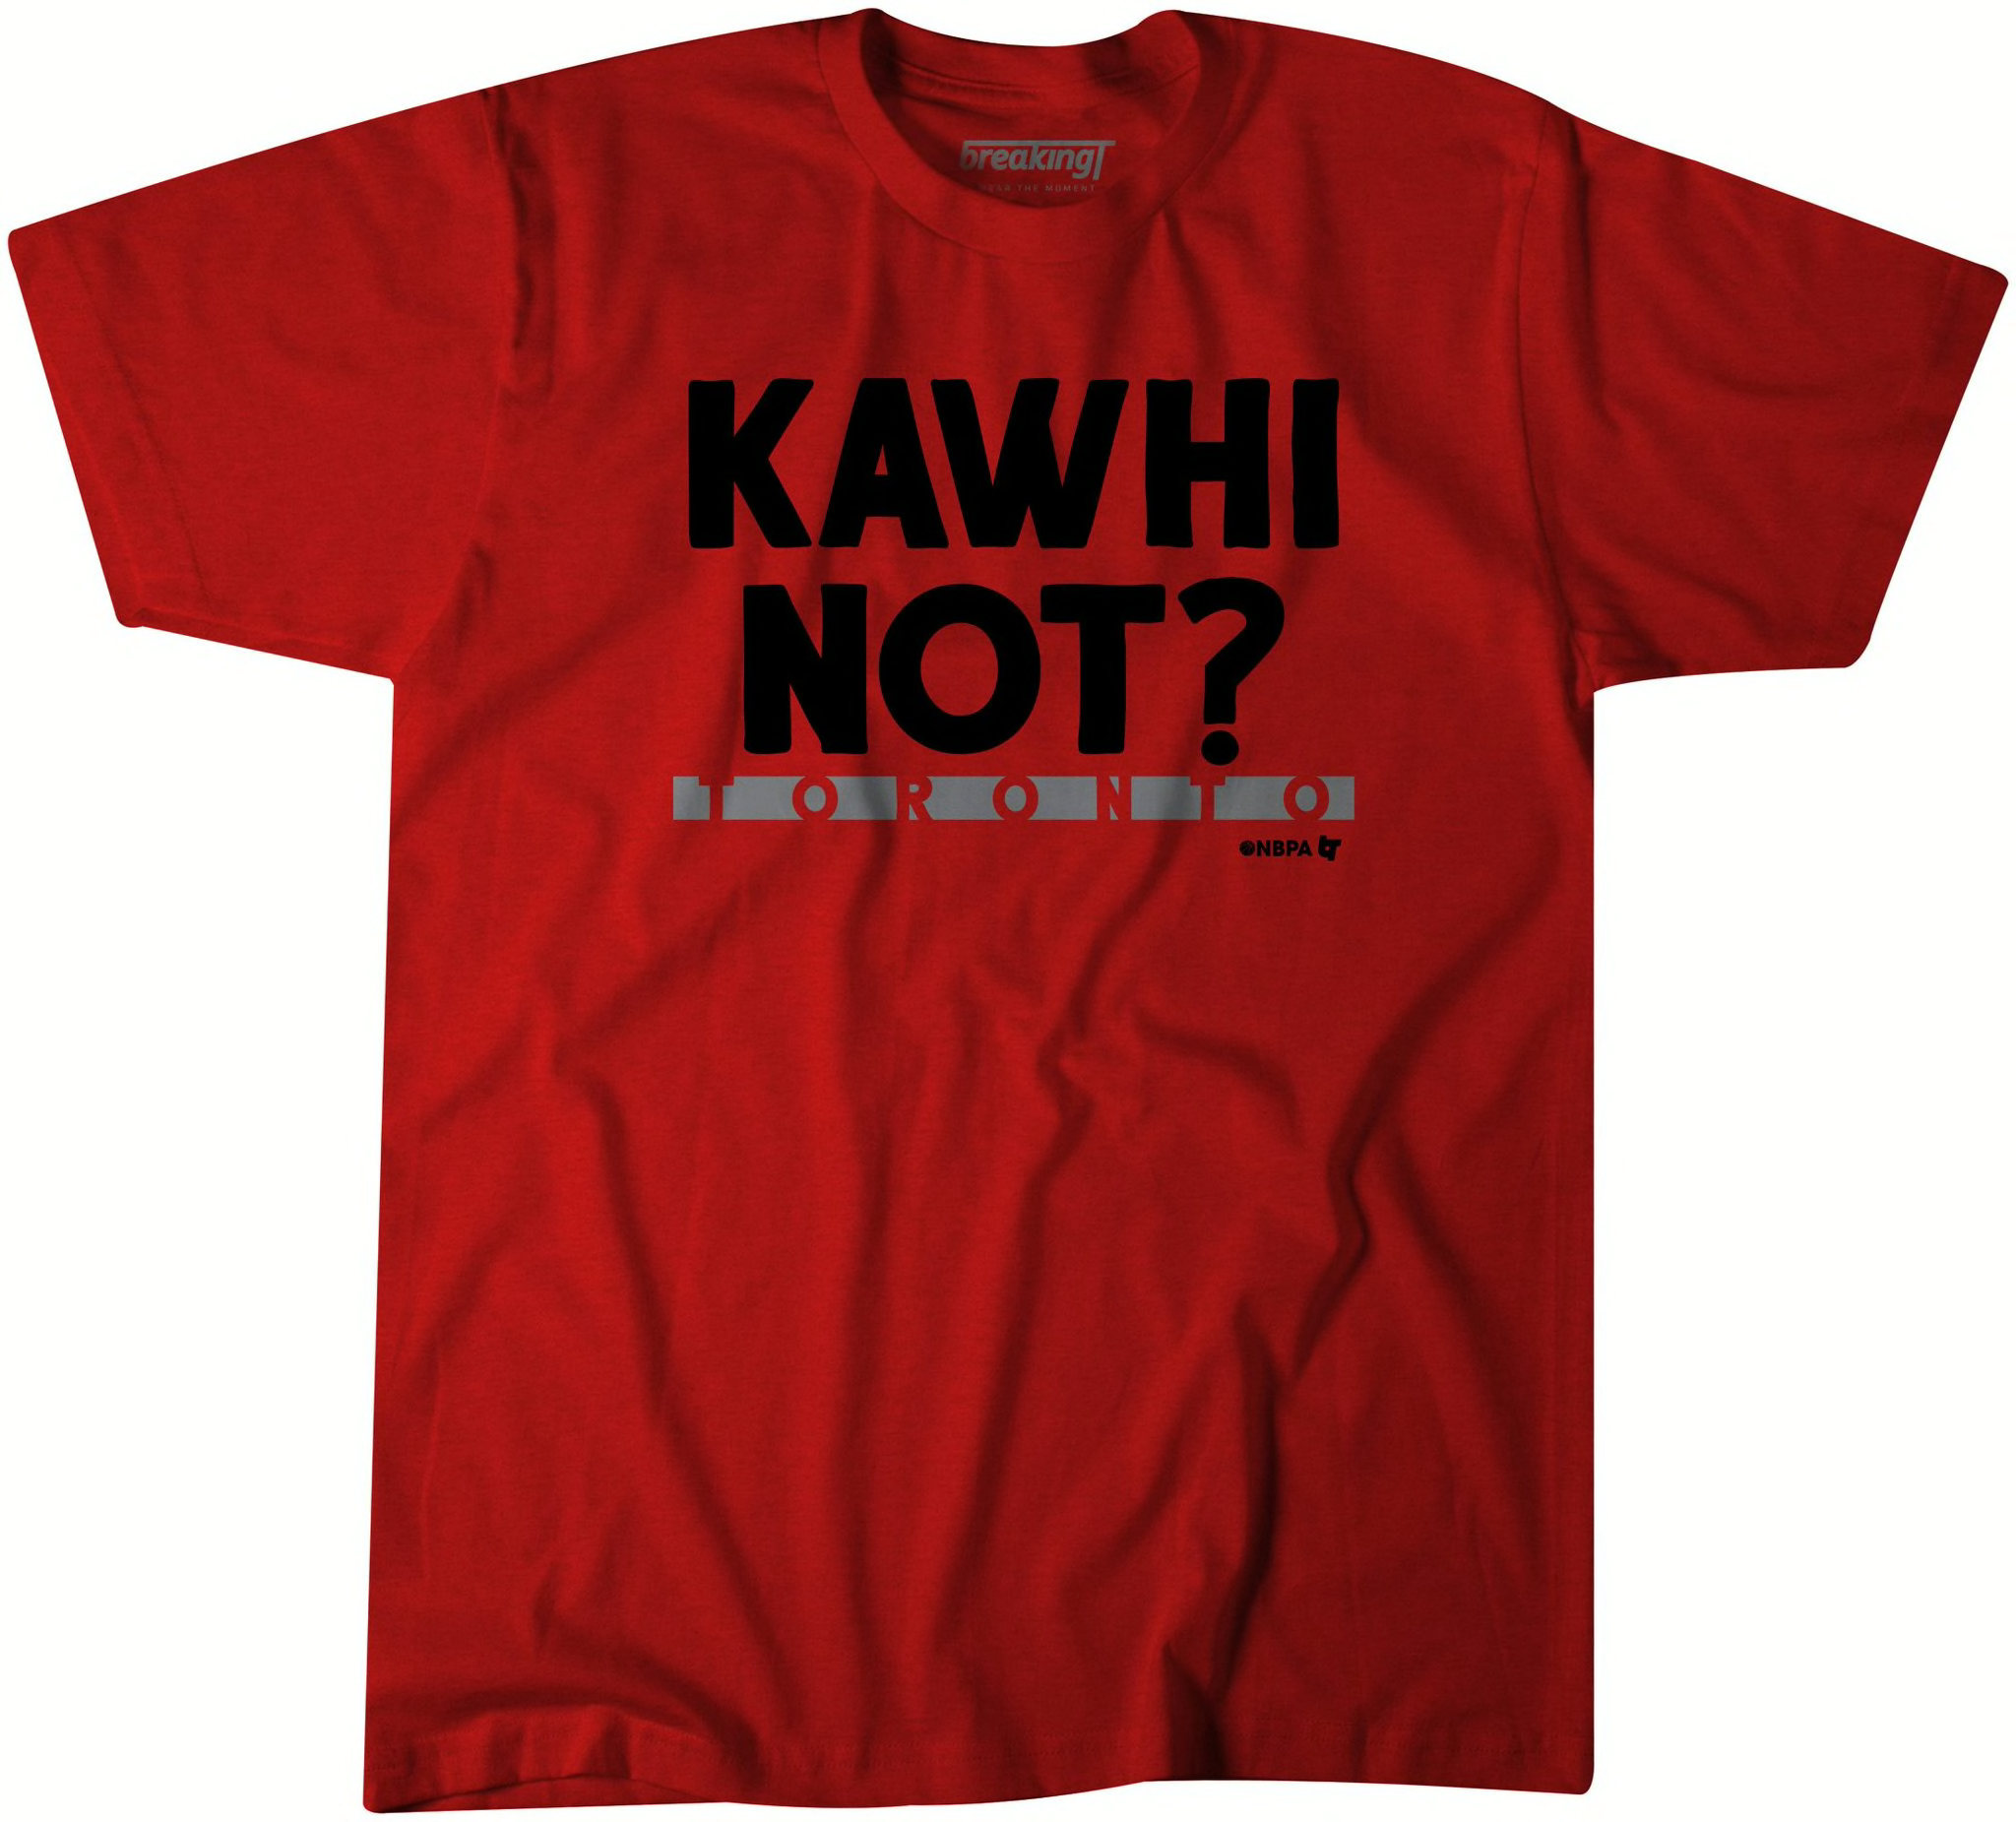 Juantamad Kawhi Leonard T-Shirt